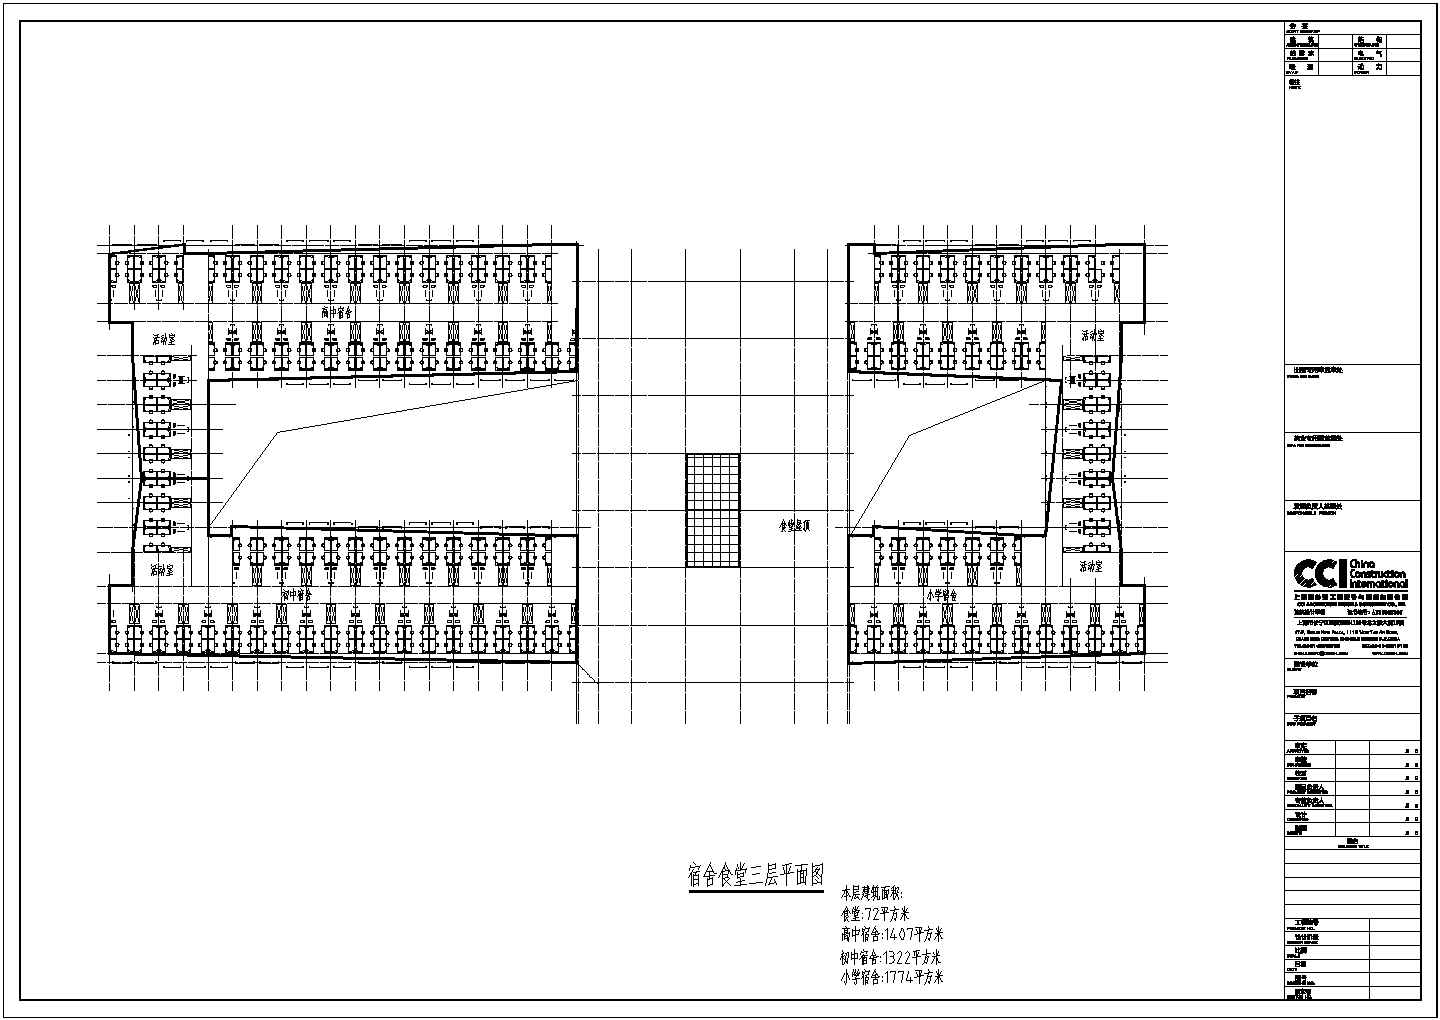 泰州市某私立中学内部4层食堂宿舍楼全套建筑设计CAD图纸